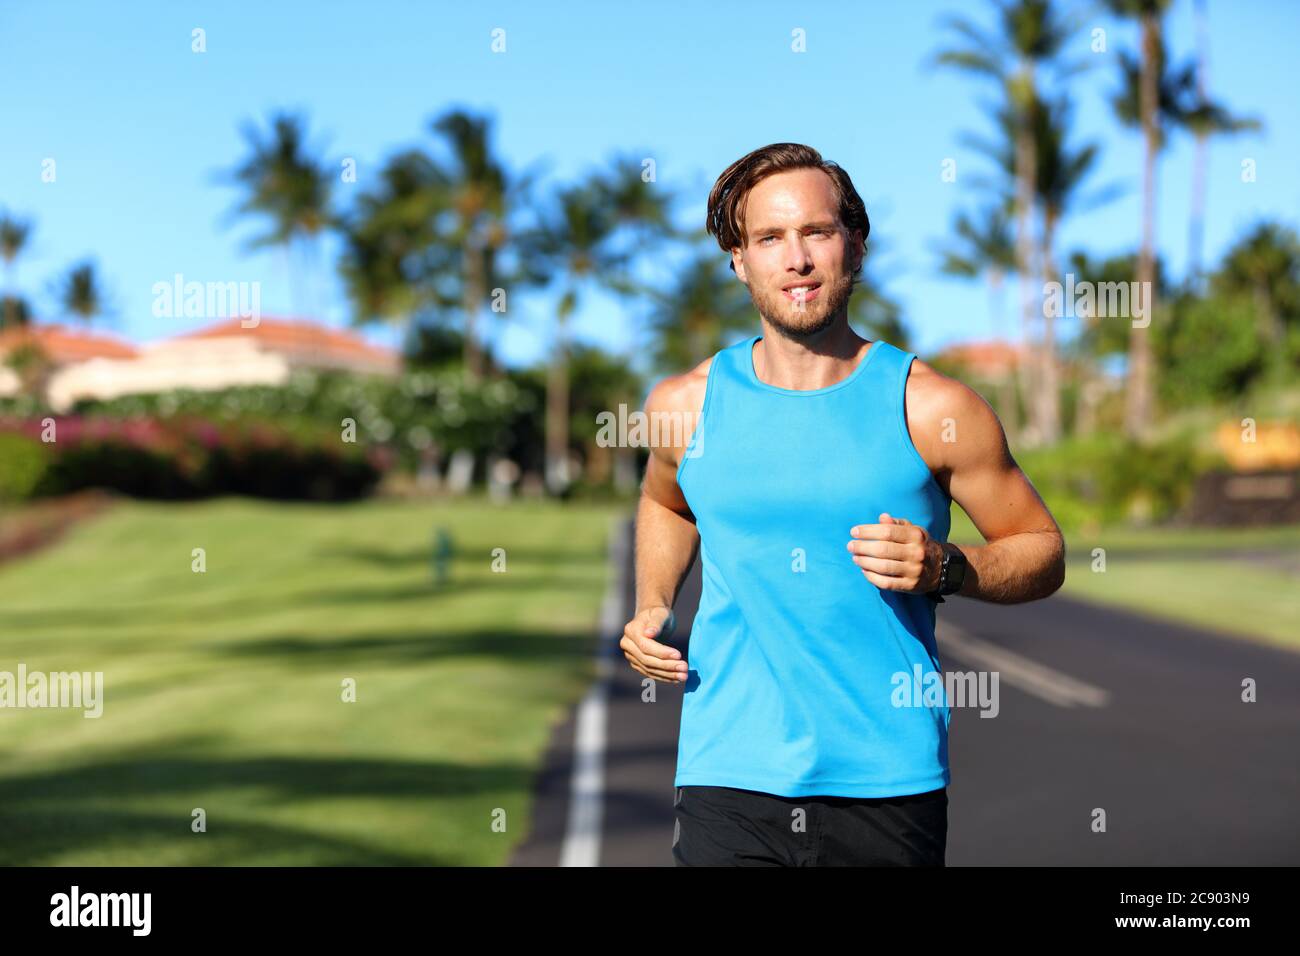 Laufsportler Mann Läufer Training Cardio auf der Straße für Marathon laufen. Athletic fit junge Sport Fitness-Modell außerhalb in tropischen Sommer Stadt Stockfoto